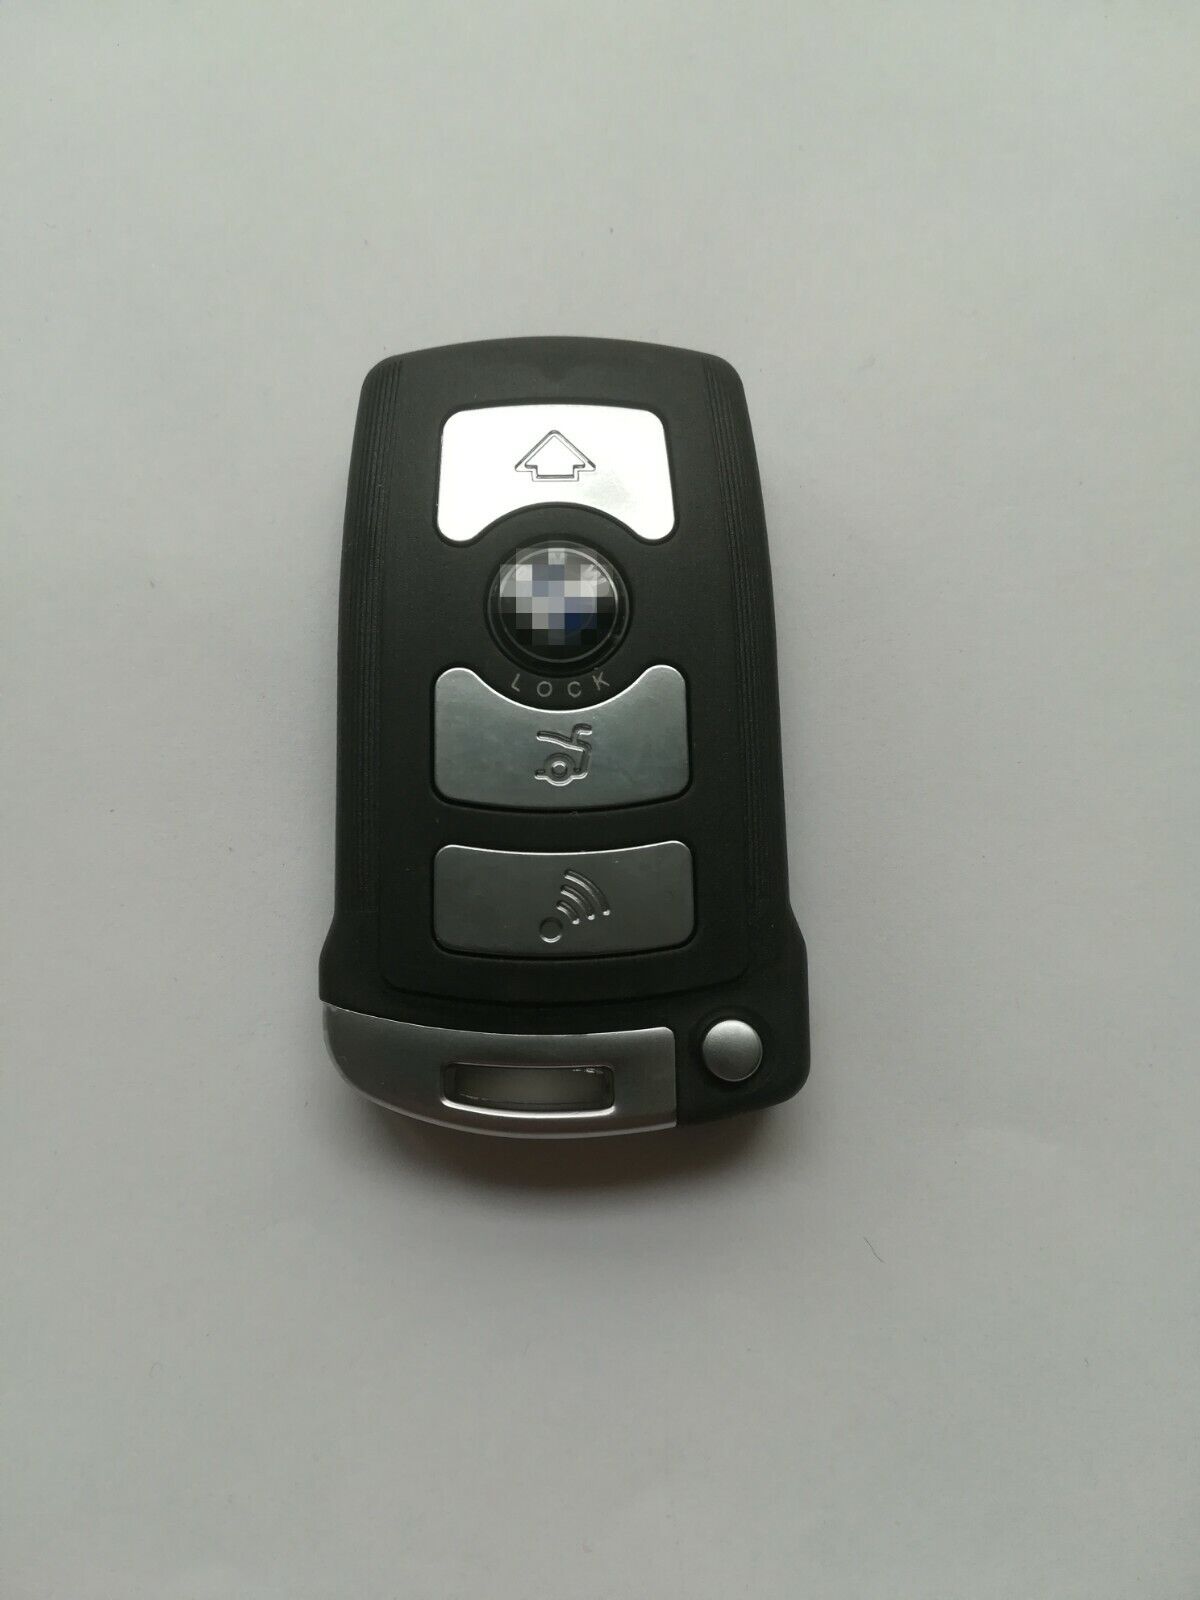 Fob Remote Key shell for BMW 760Li 760i 750Li 750i 740i 740Li 745i LX 8766 S